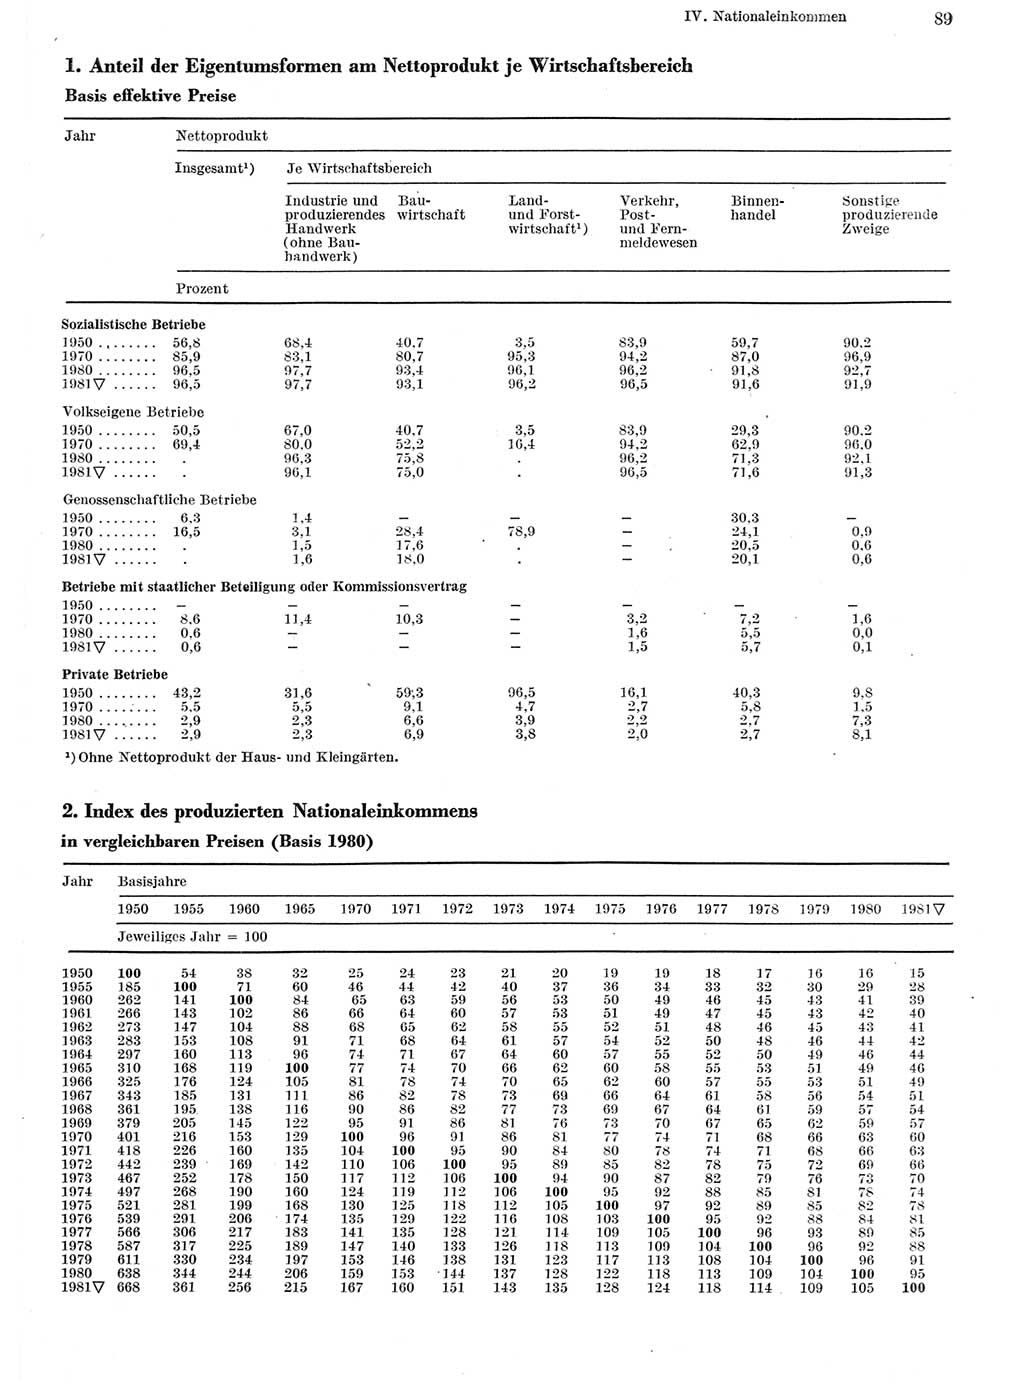 Statistisches Jahrbuch der Deutschen Demokratischen Republik (DDR) 1982, Seite 89 (Stat. Jb. DDR 1982, S. 89)